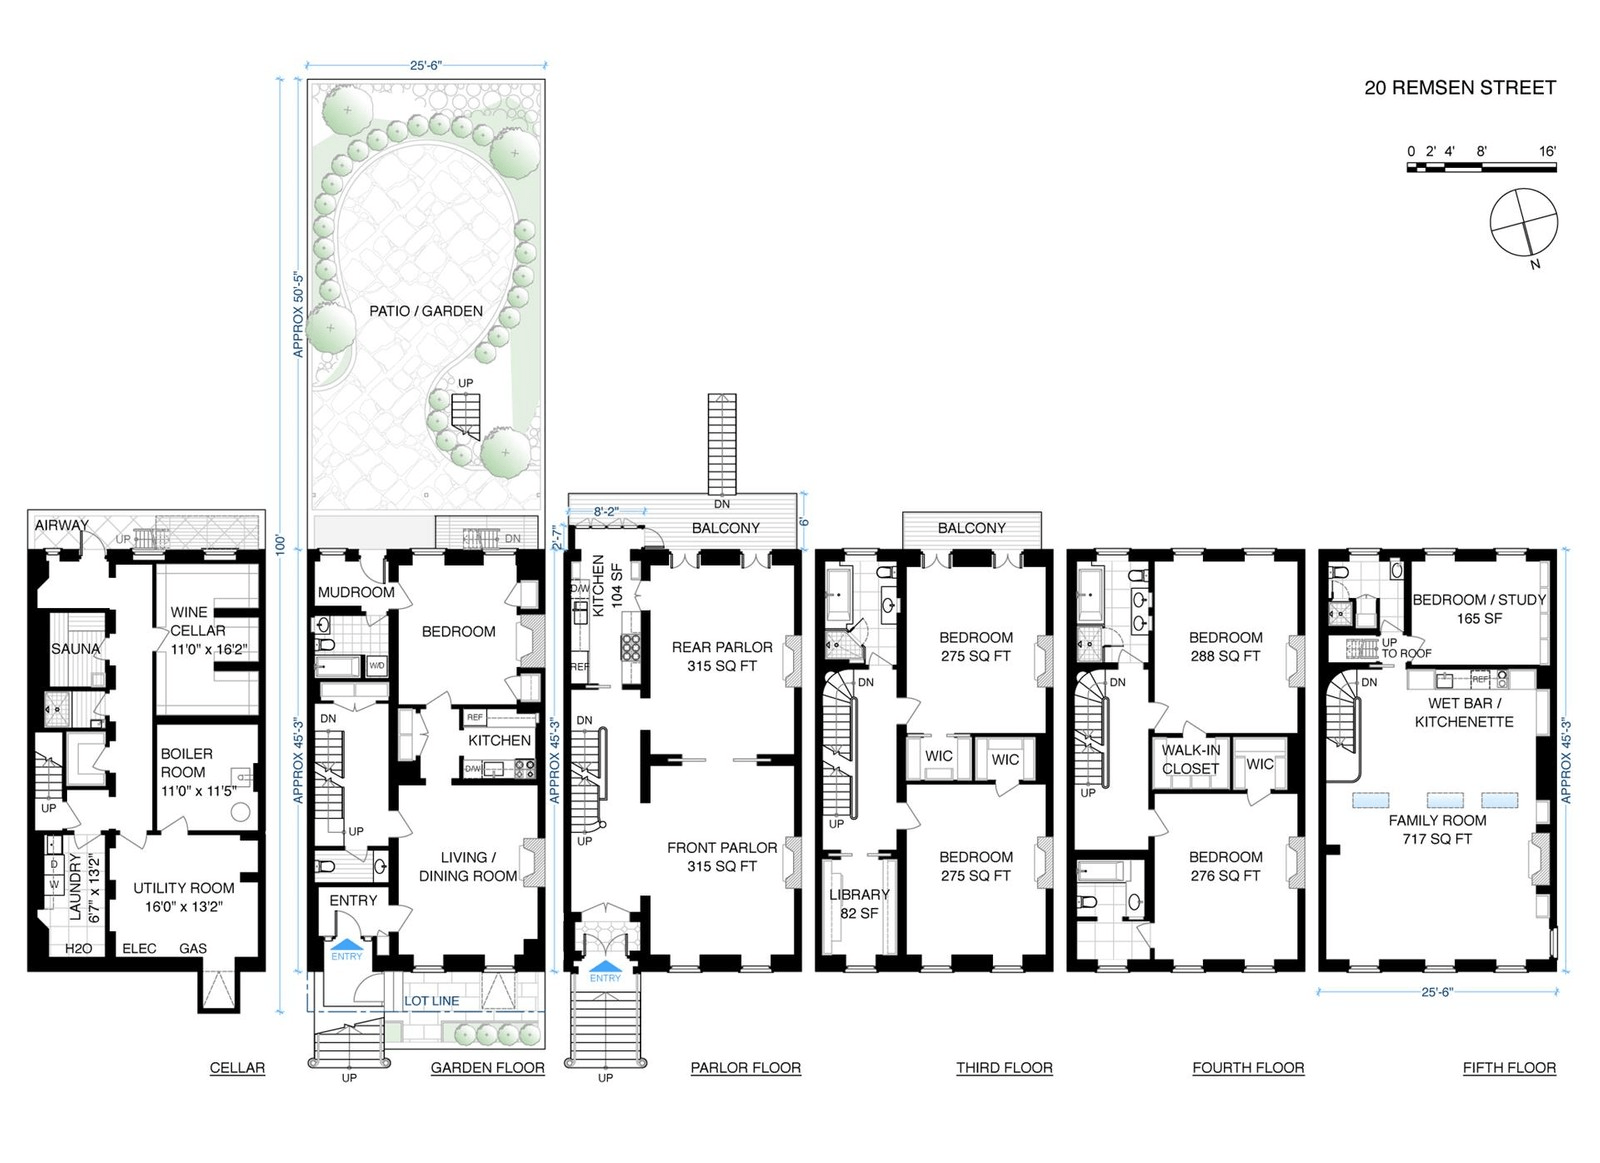 floorplan of 20 remsen street